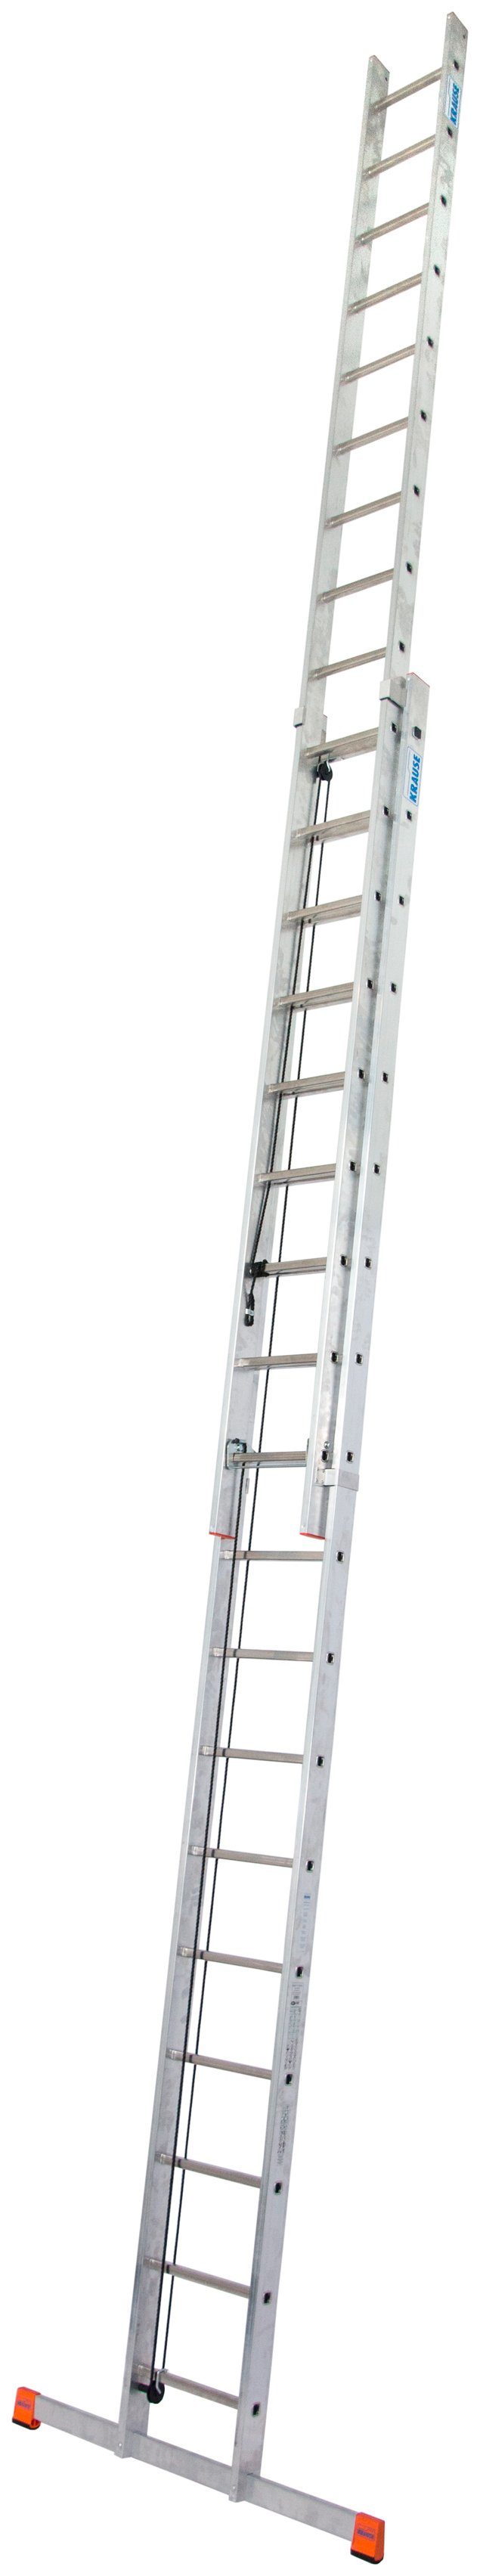 Schiebeleiter 2x18 Alu, Robilo, ca. Sprossen, Arbeitshöhe 980 cm Seilzugleiter KRAUSE